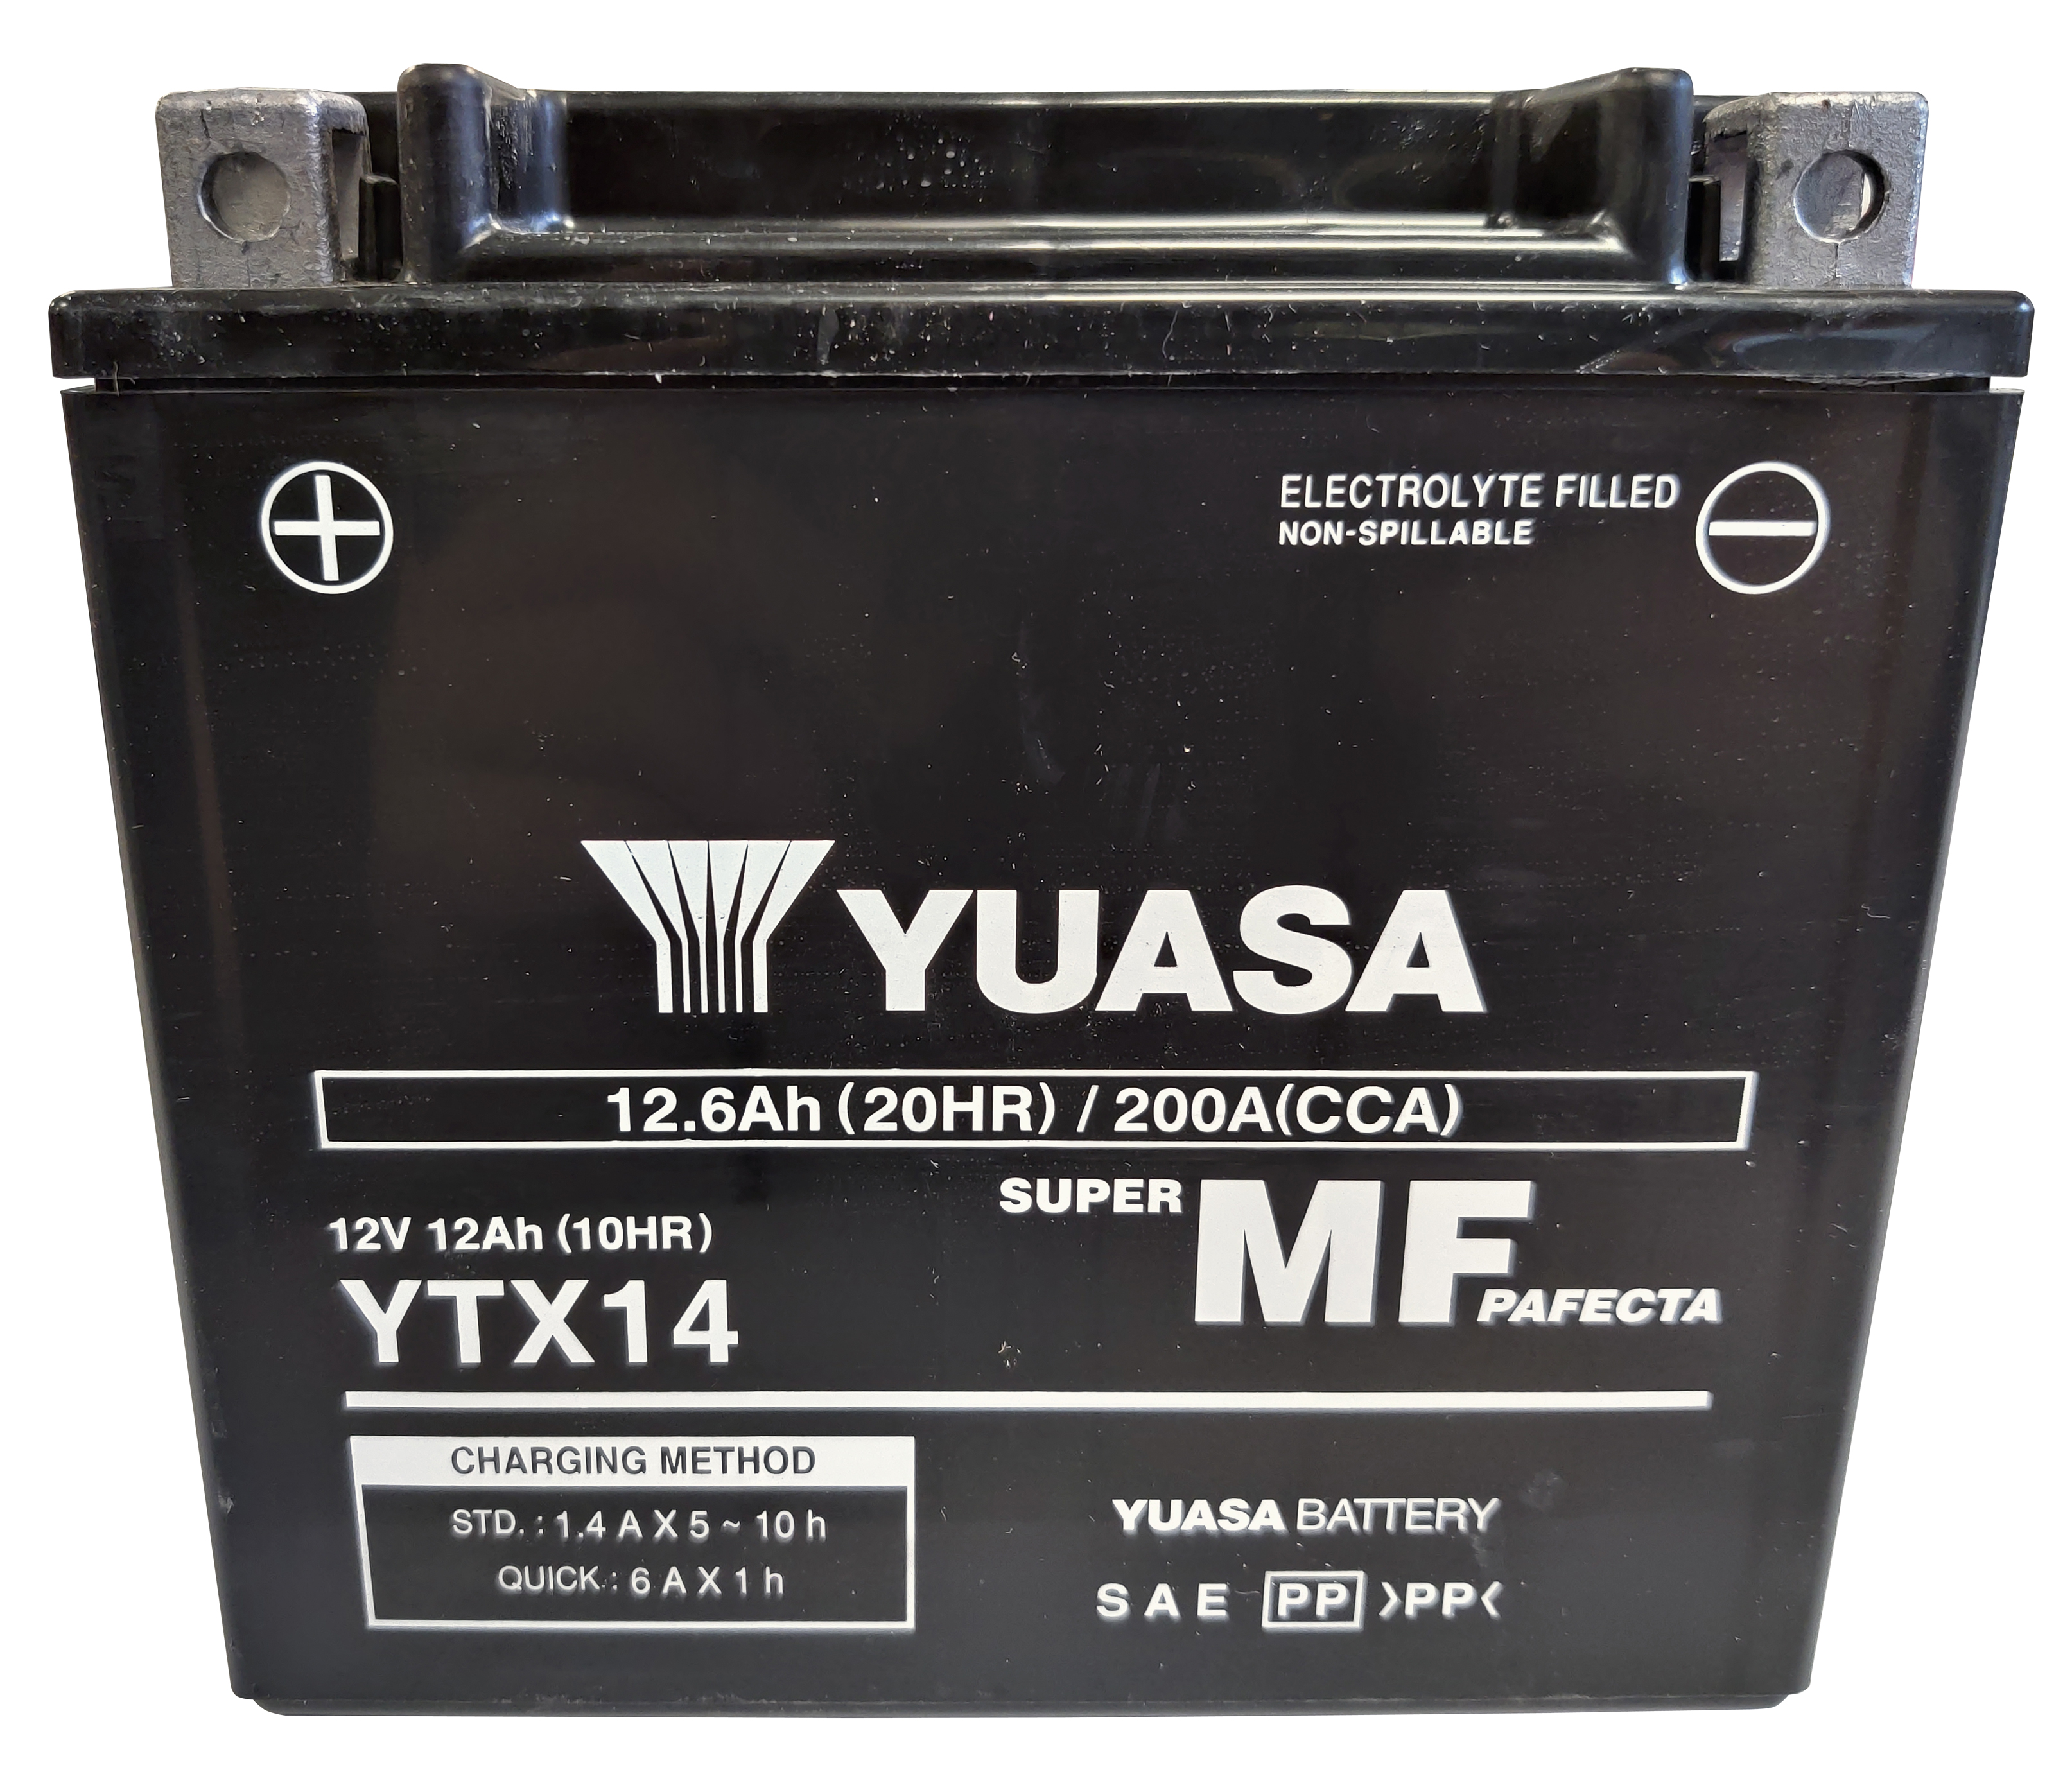 YUASA Batterie fermée sans entretien - Batterie moto & scooter